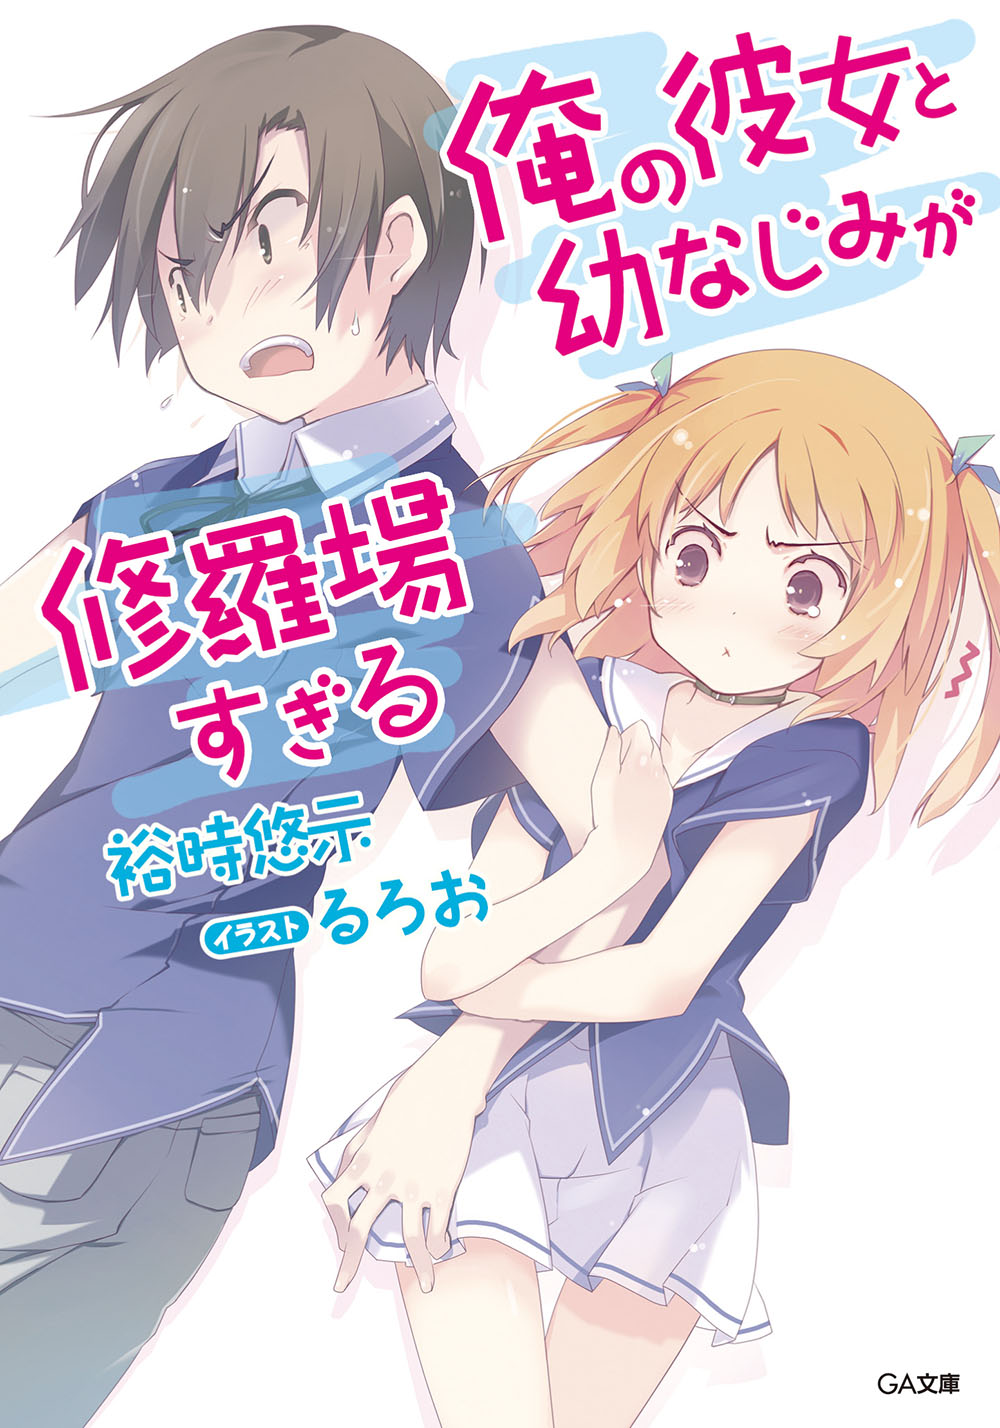 Light Novel Volume 17, Ore no Kanojo to Osananajimi ga Shuraba Sugiru Wiki